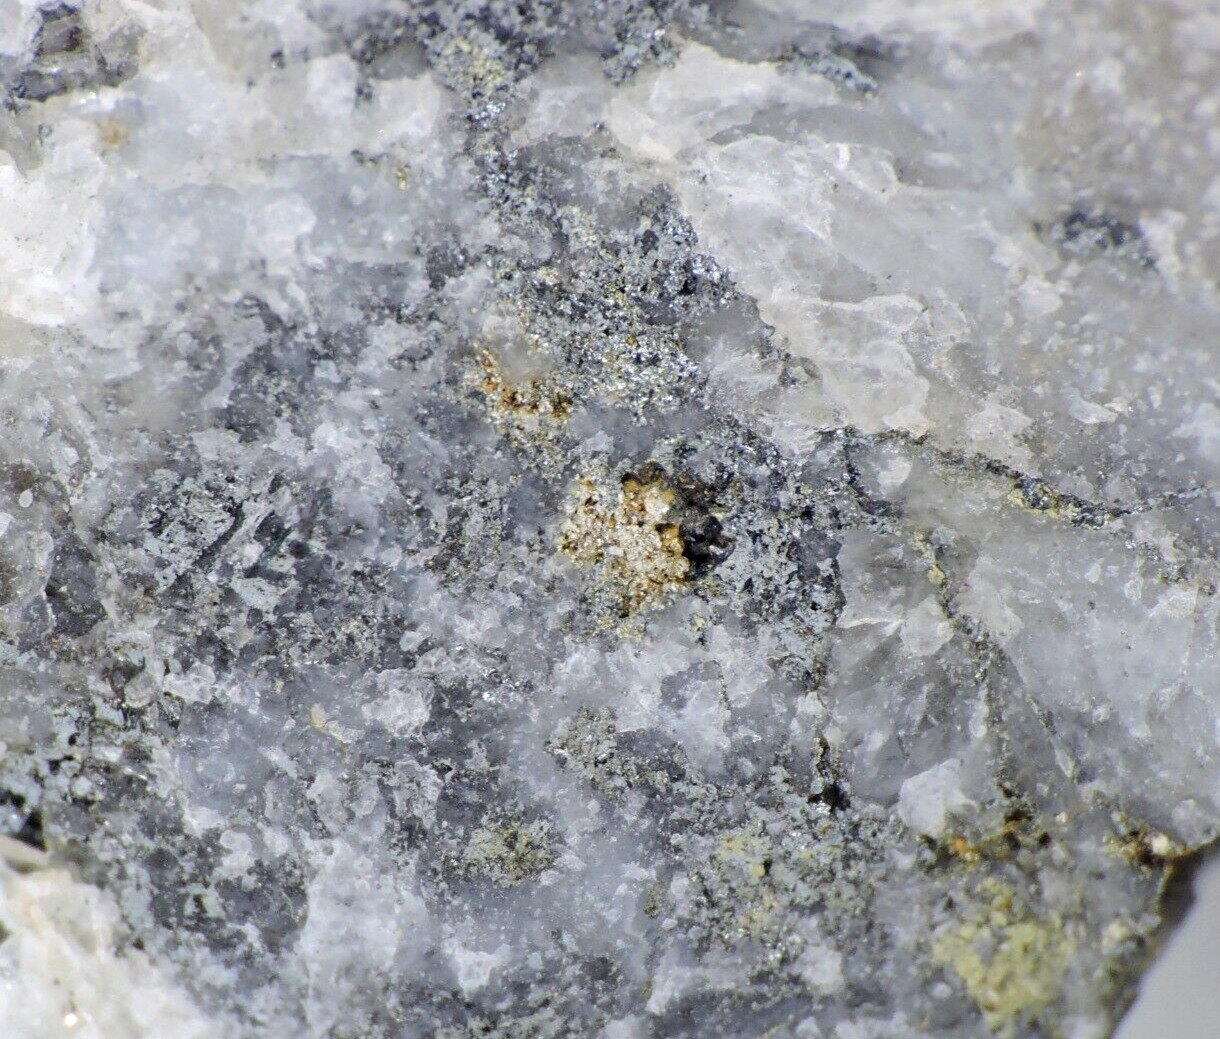 Gold Tellurides Sylvanite Petzite *Tintic Mining District, Utah*